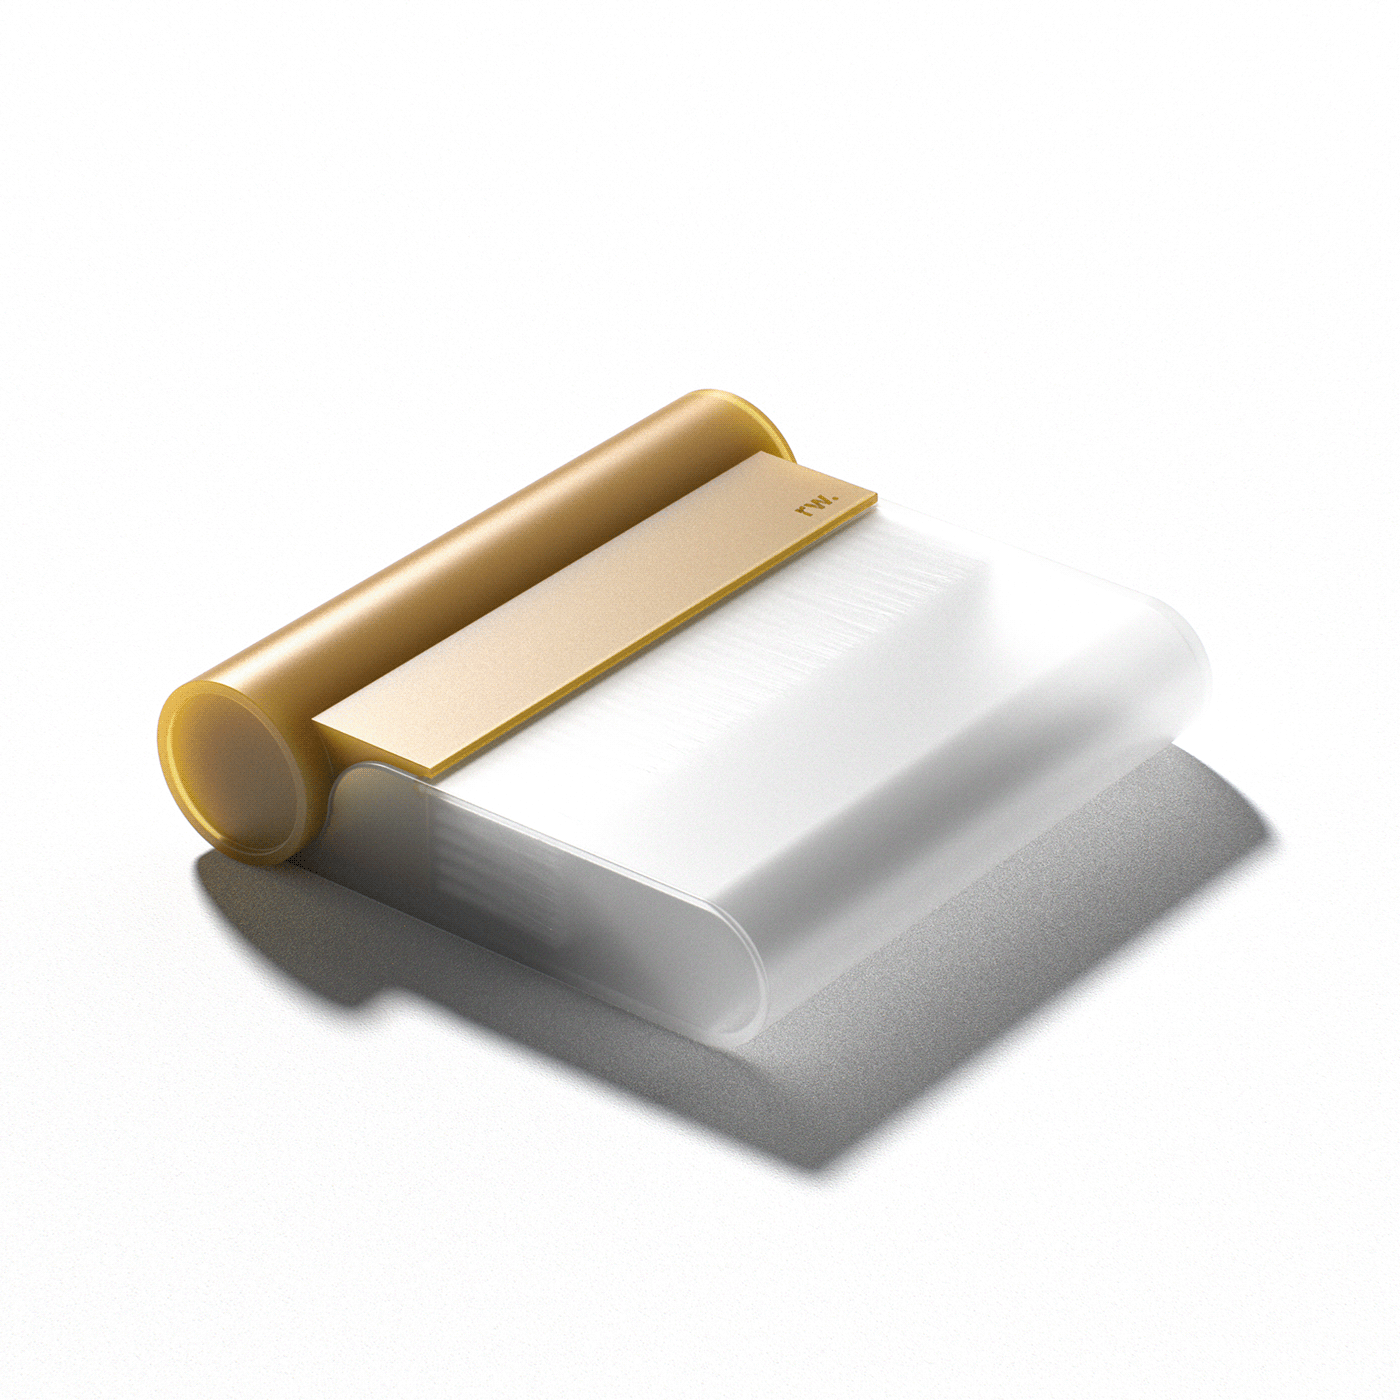 Broom brush dustpan industrial design  keyshot minimal product Render render weekly Renderweekly